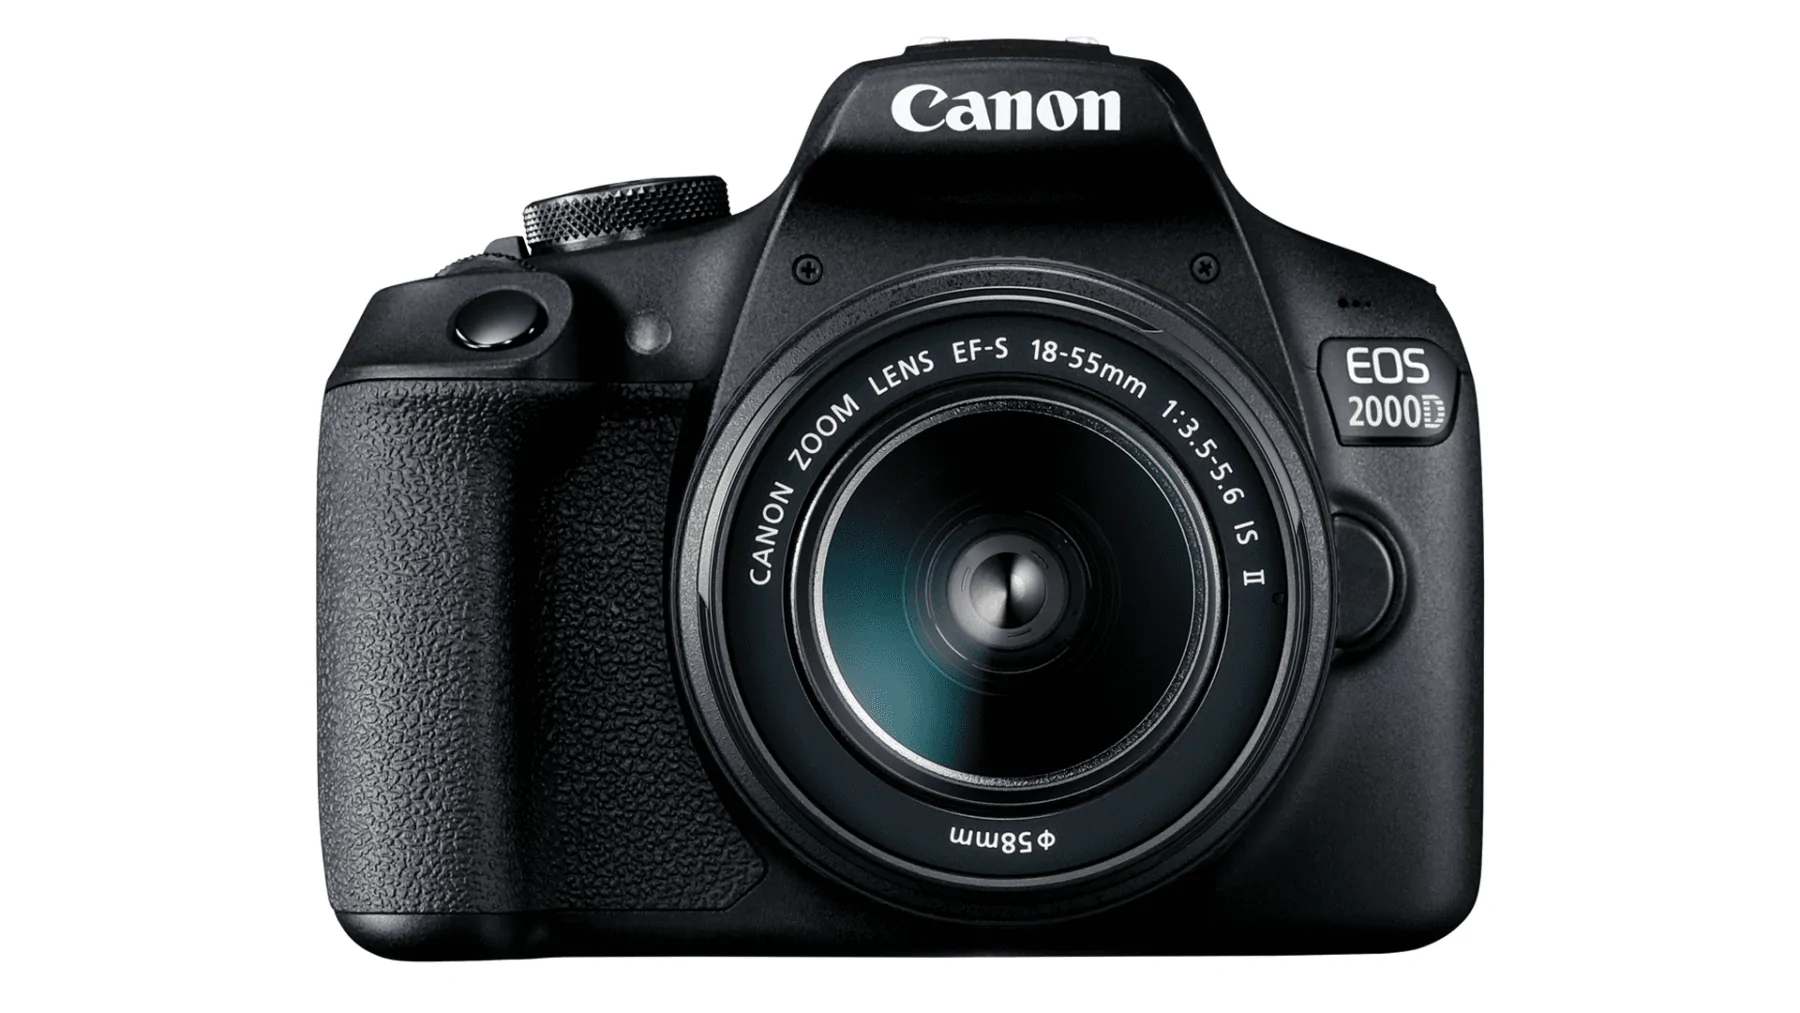 fotocamera voor beginners: Canon EOS 2000d